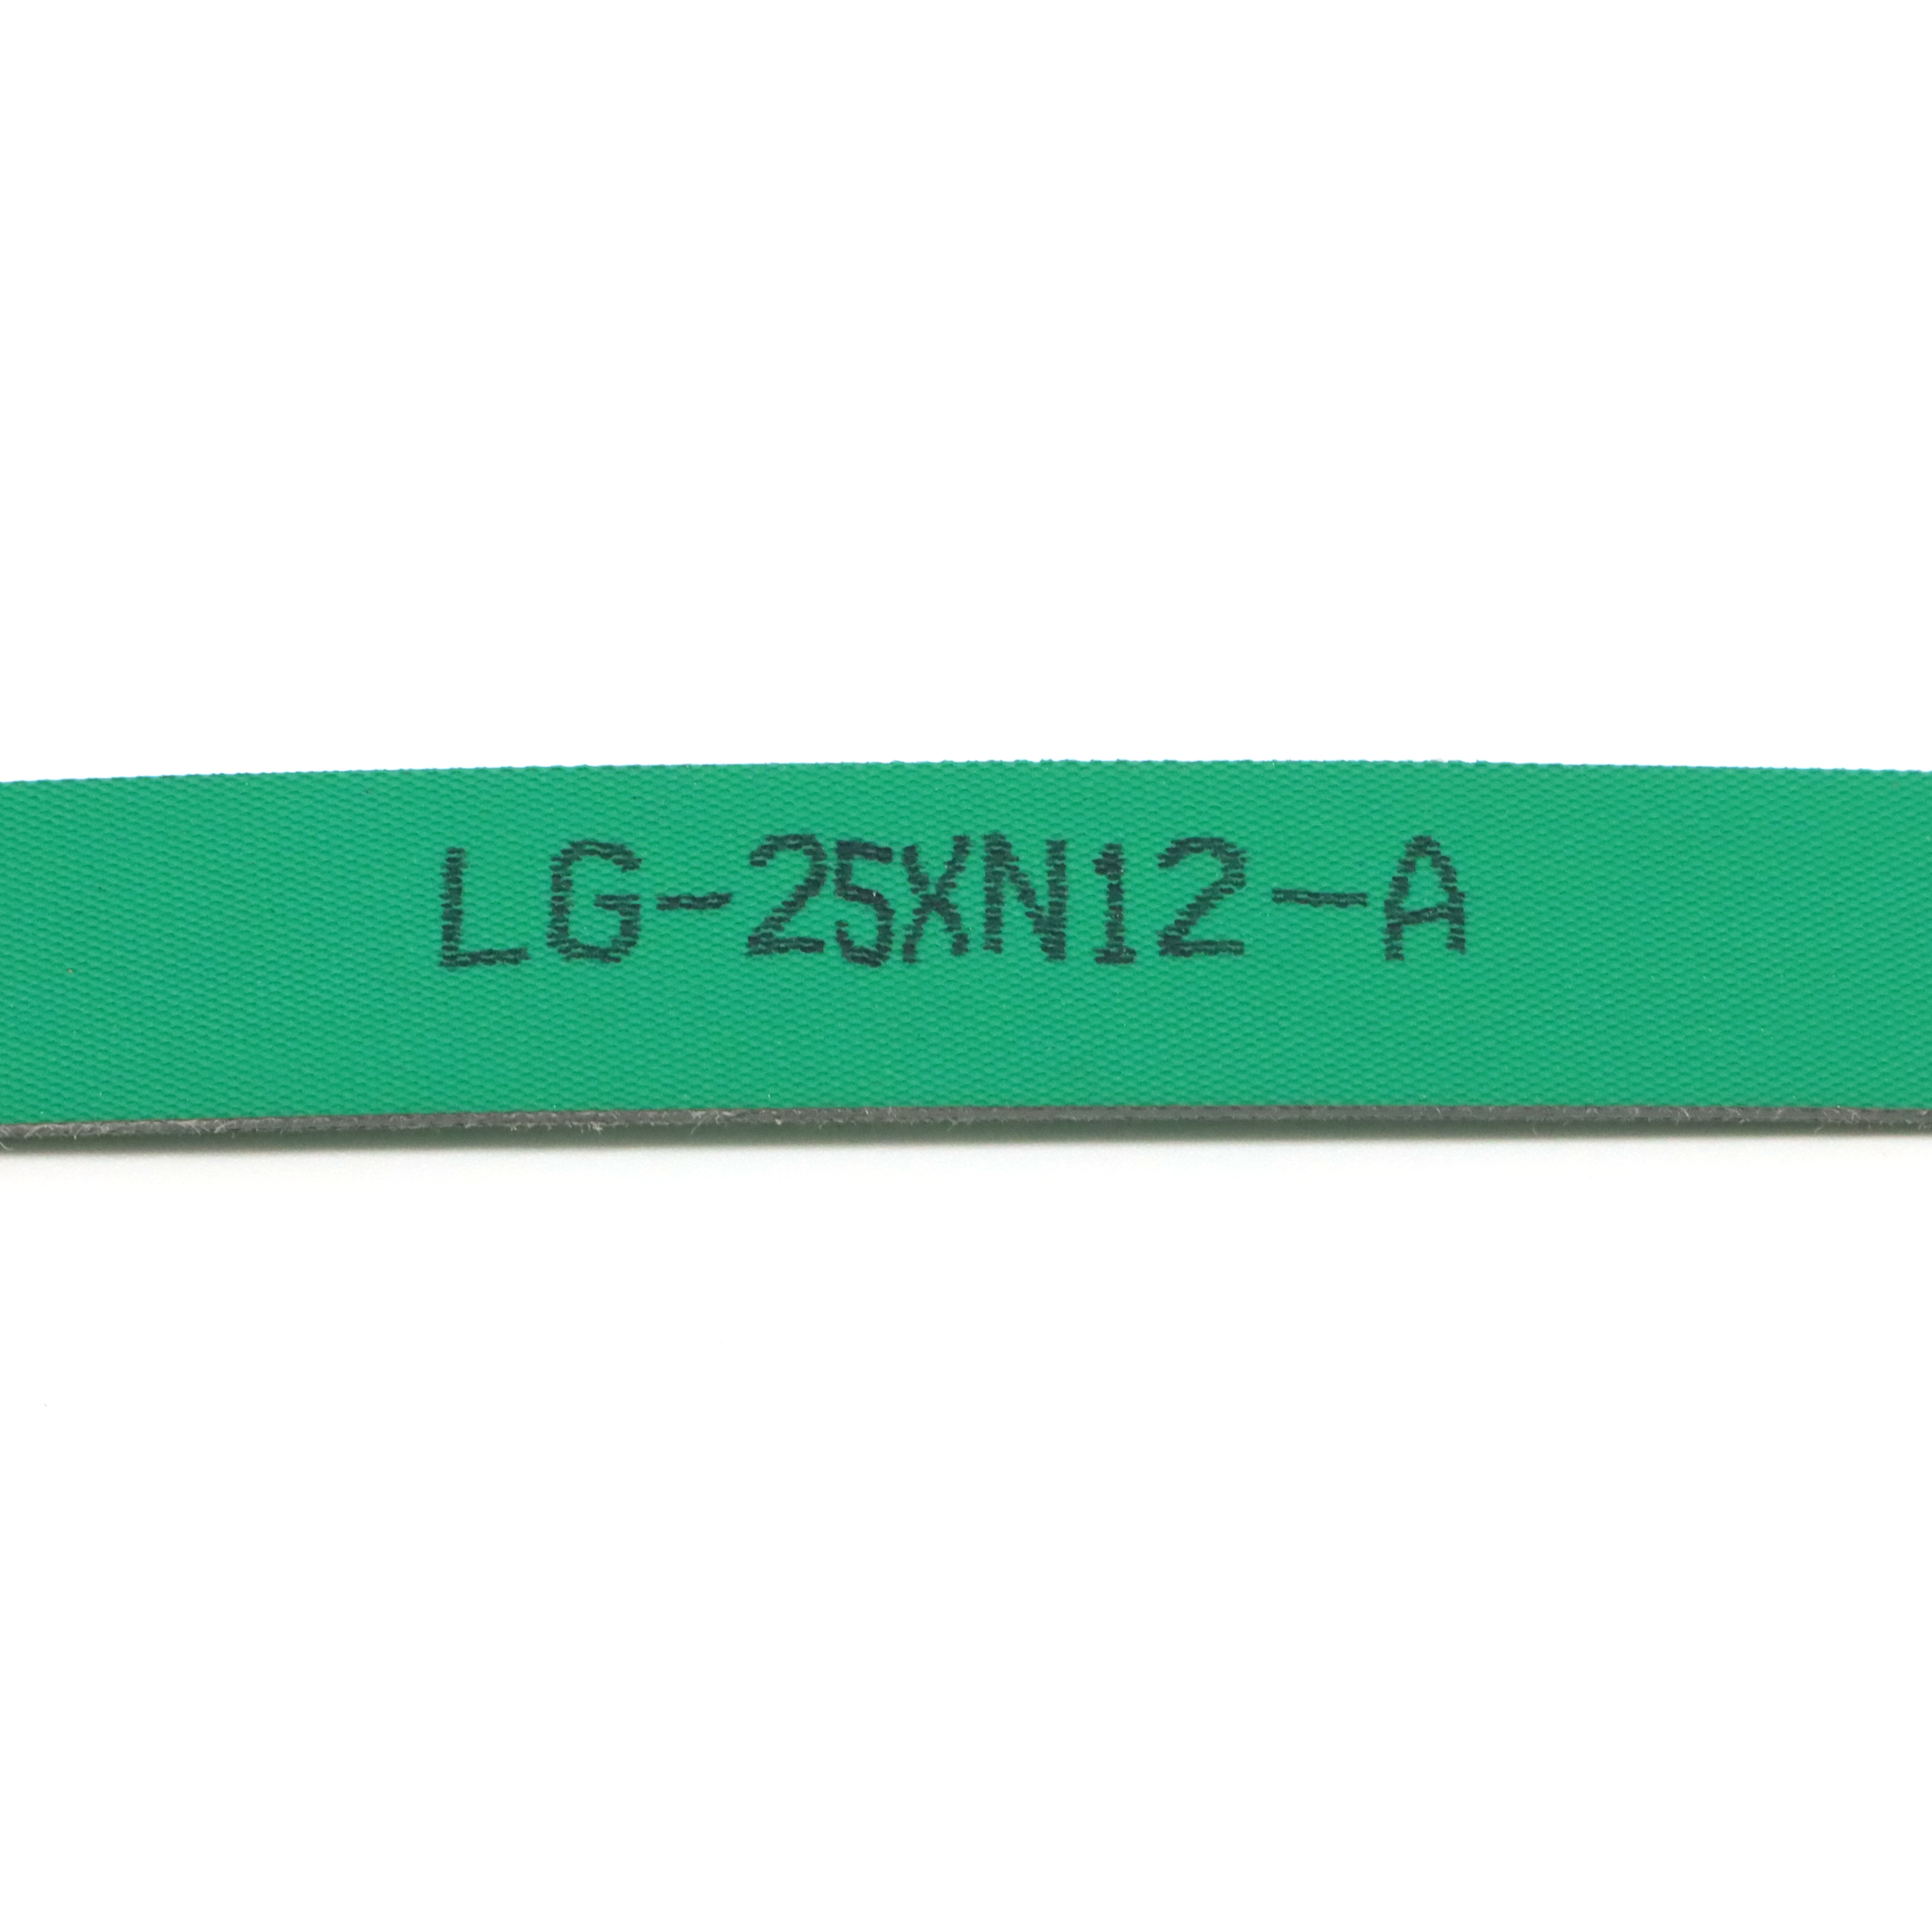 LG-25XN12-A